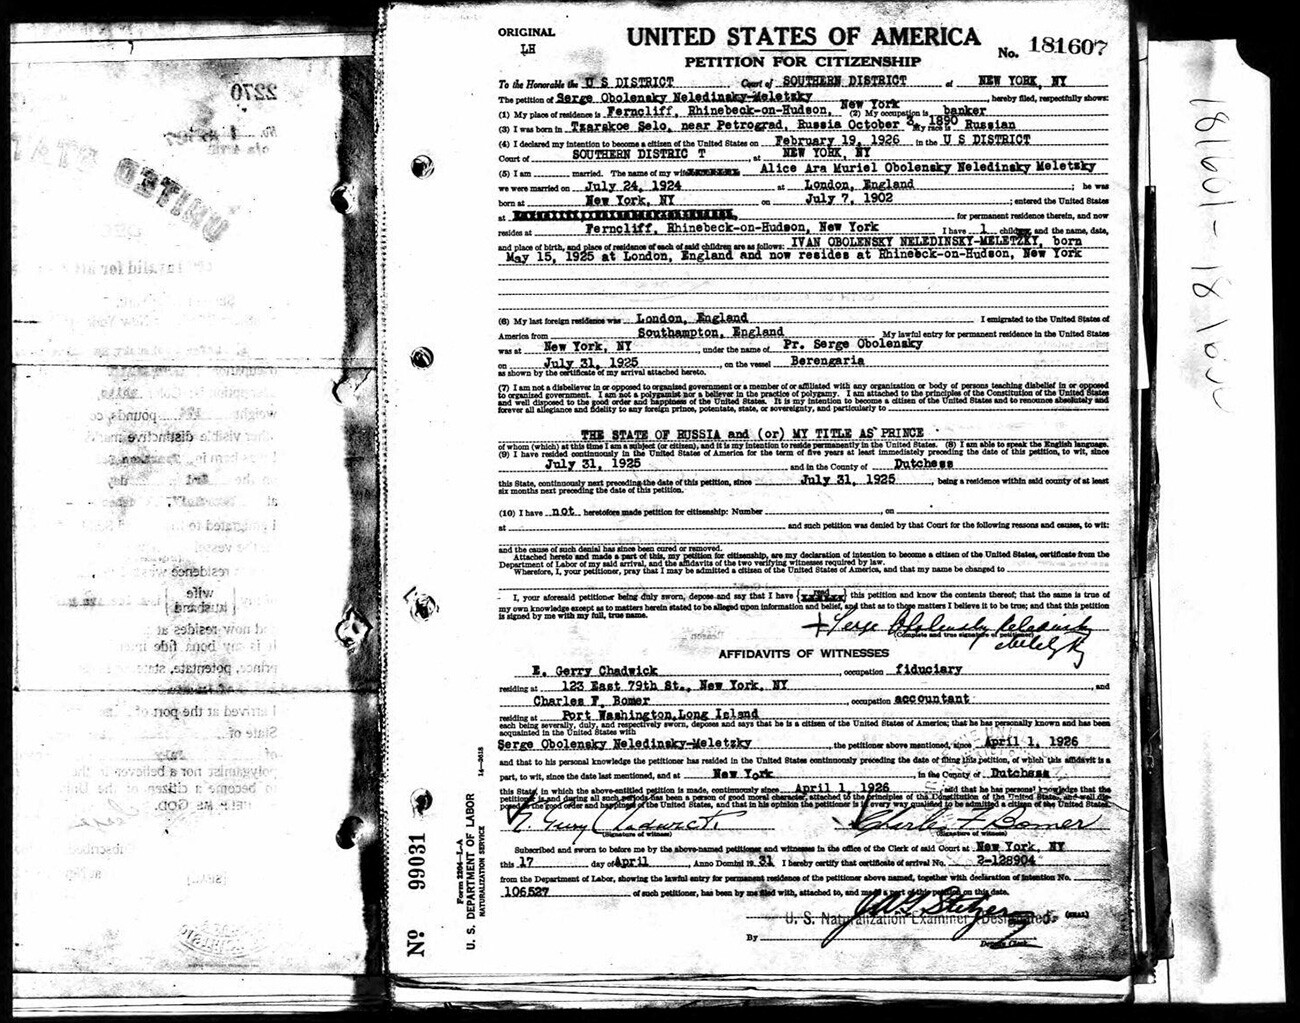 La domanda per l‘ottenimento della cittadinanza americana di Serge Obolensky, 1925

